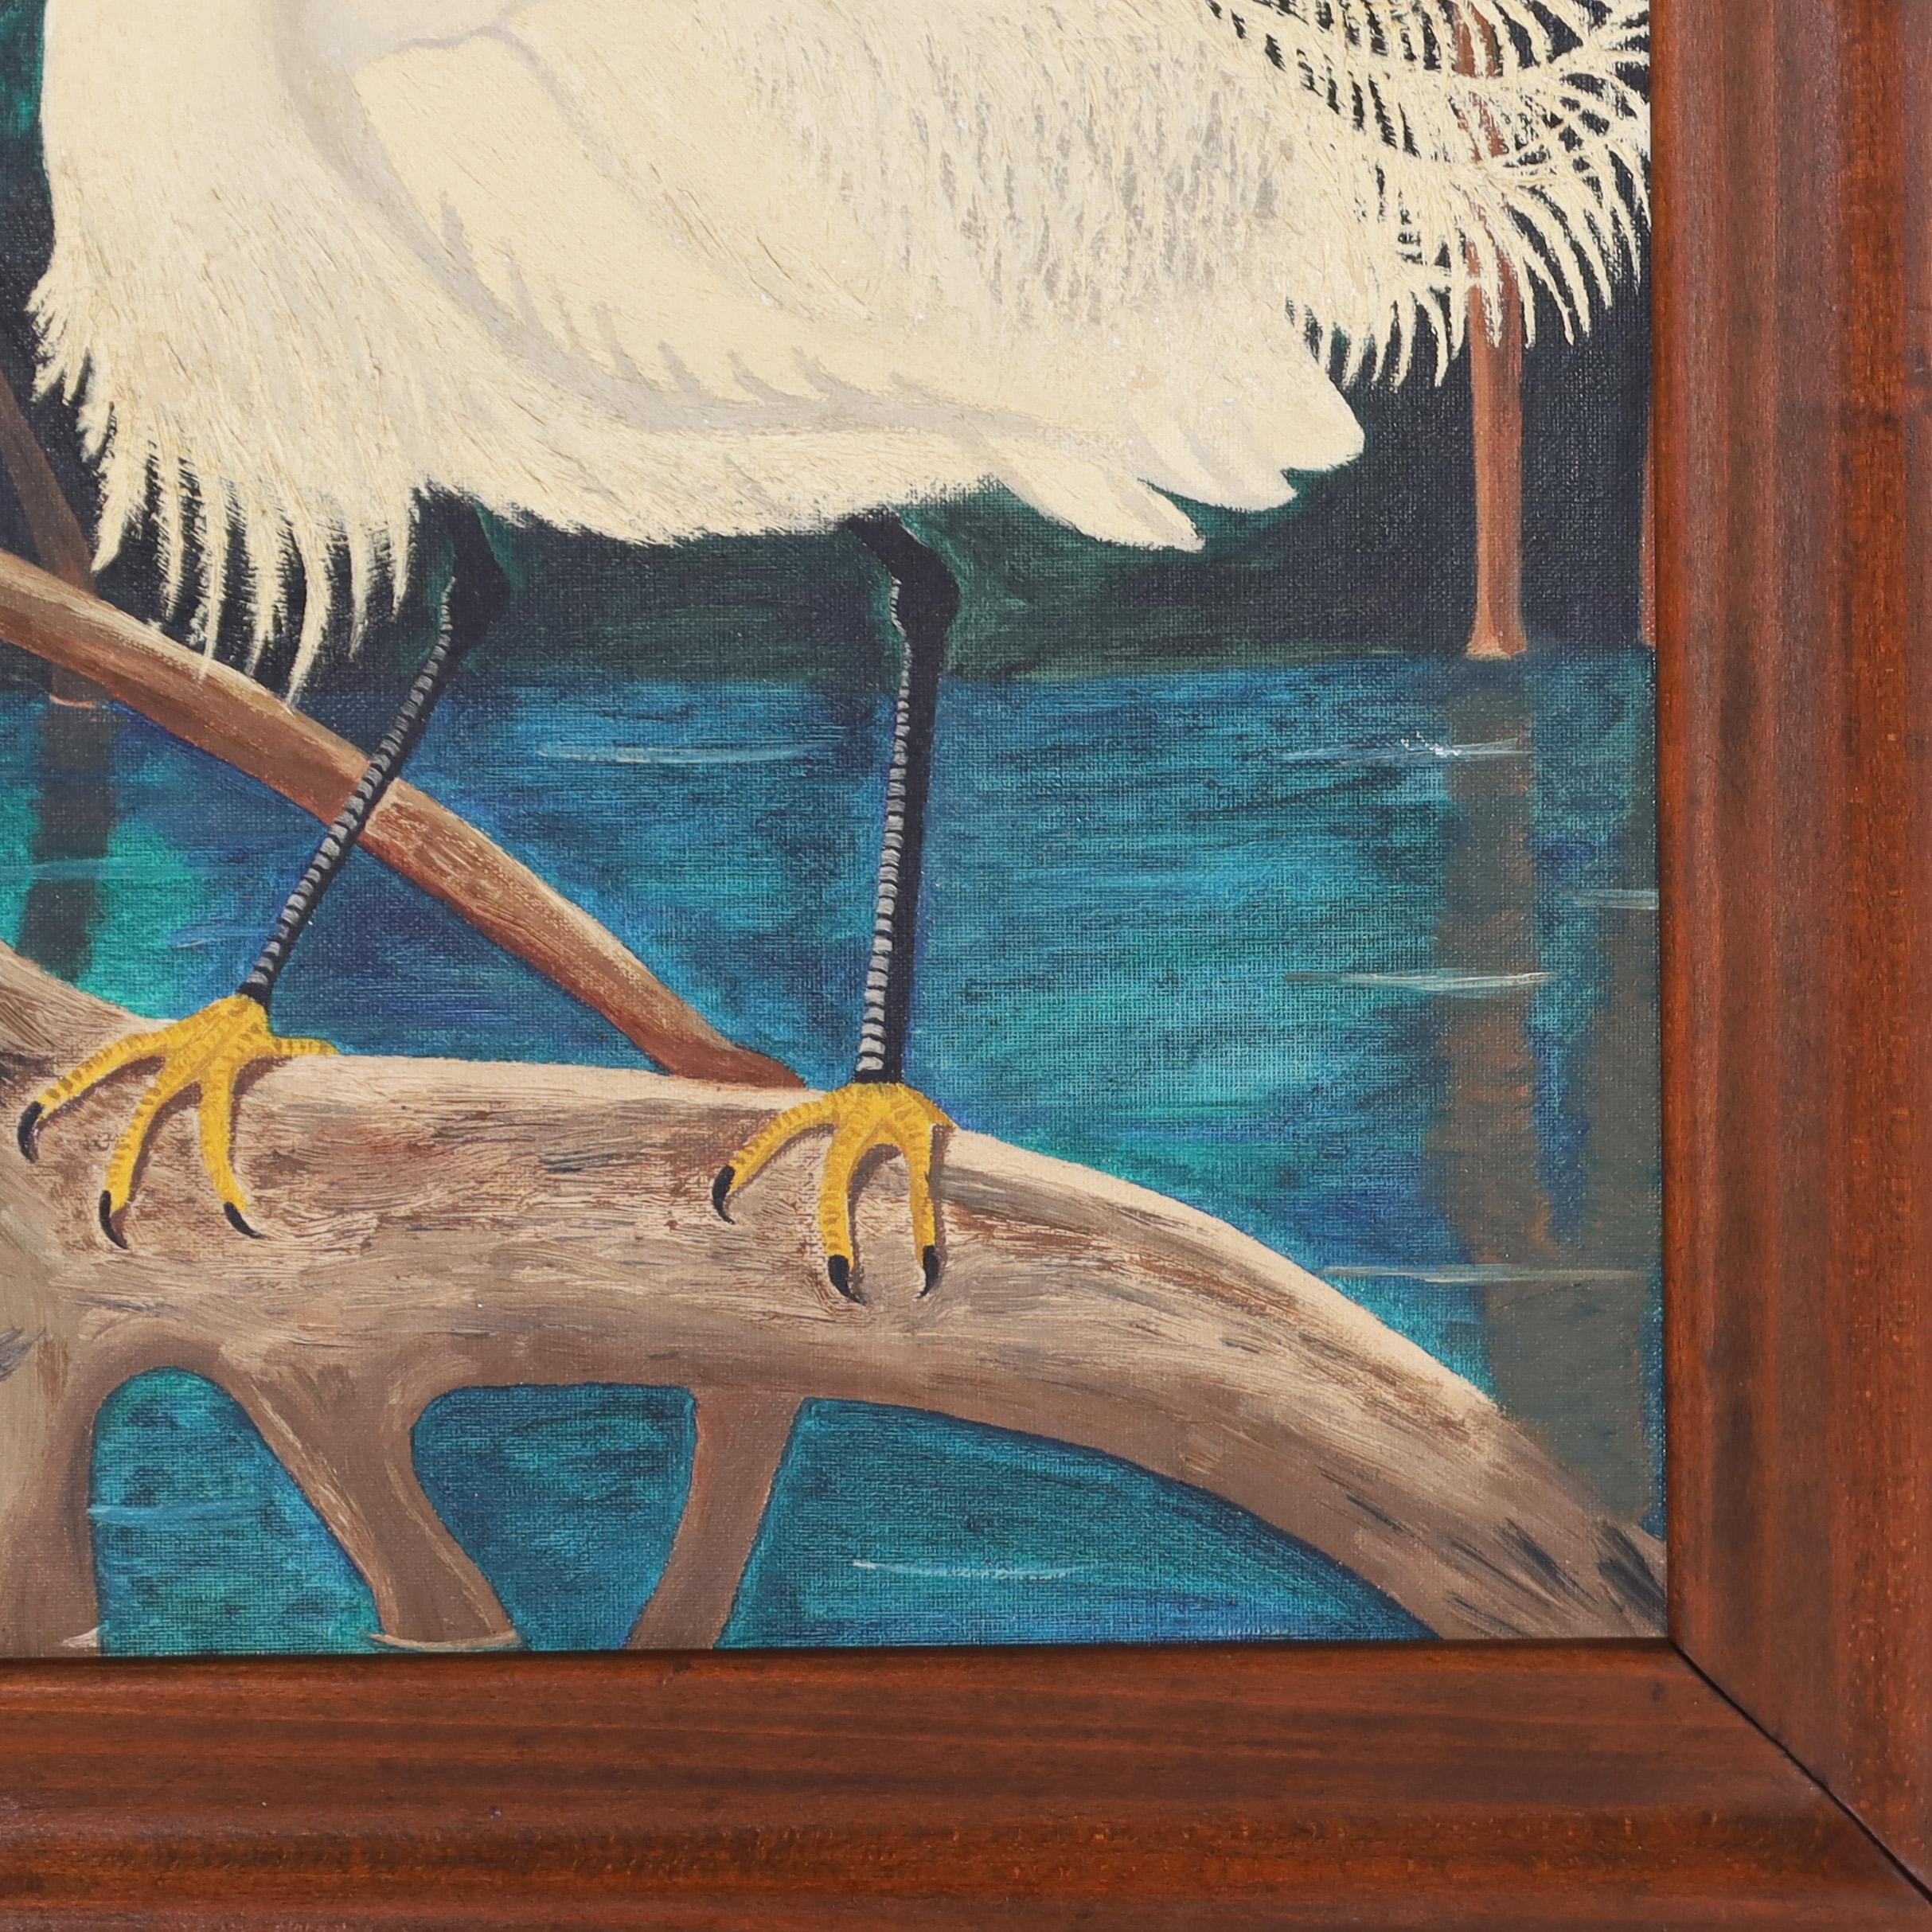 Auffälliges Vintage-Ölgemälde auf Karton mit zwei Schneereihern in einer tropischen Umgebung mit Mangrovenbäumen und Blumen. Präsentiert im Original-Mahagoni-Rahmen.